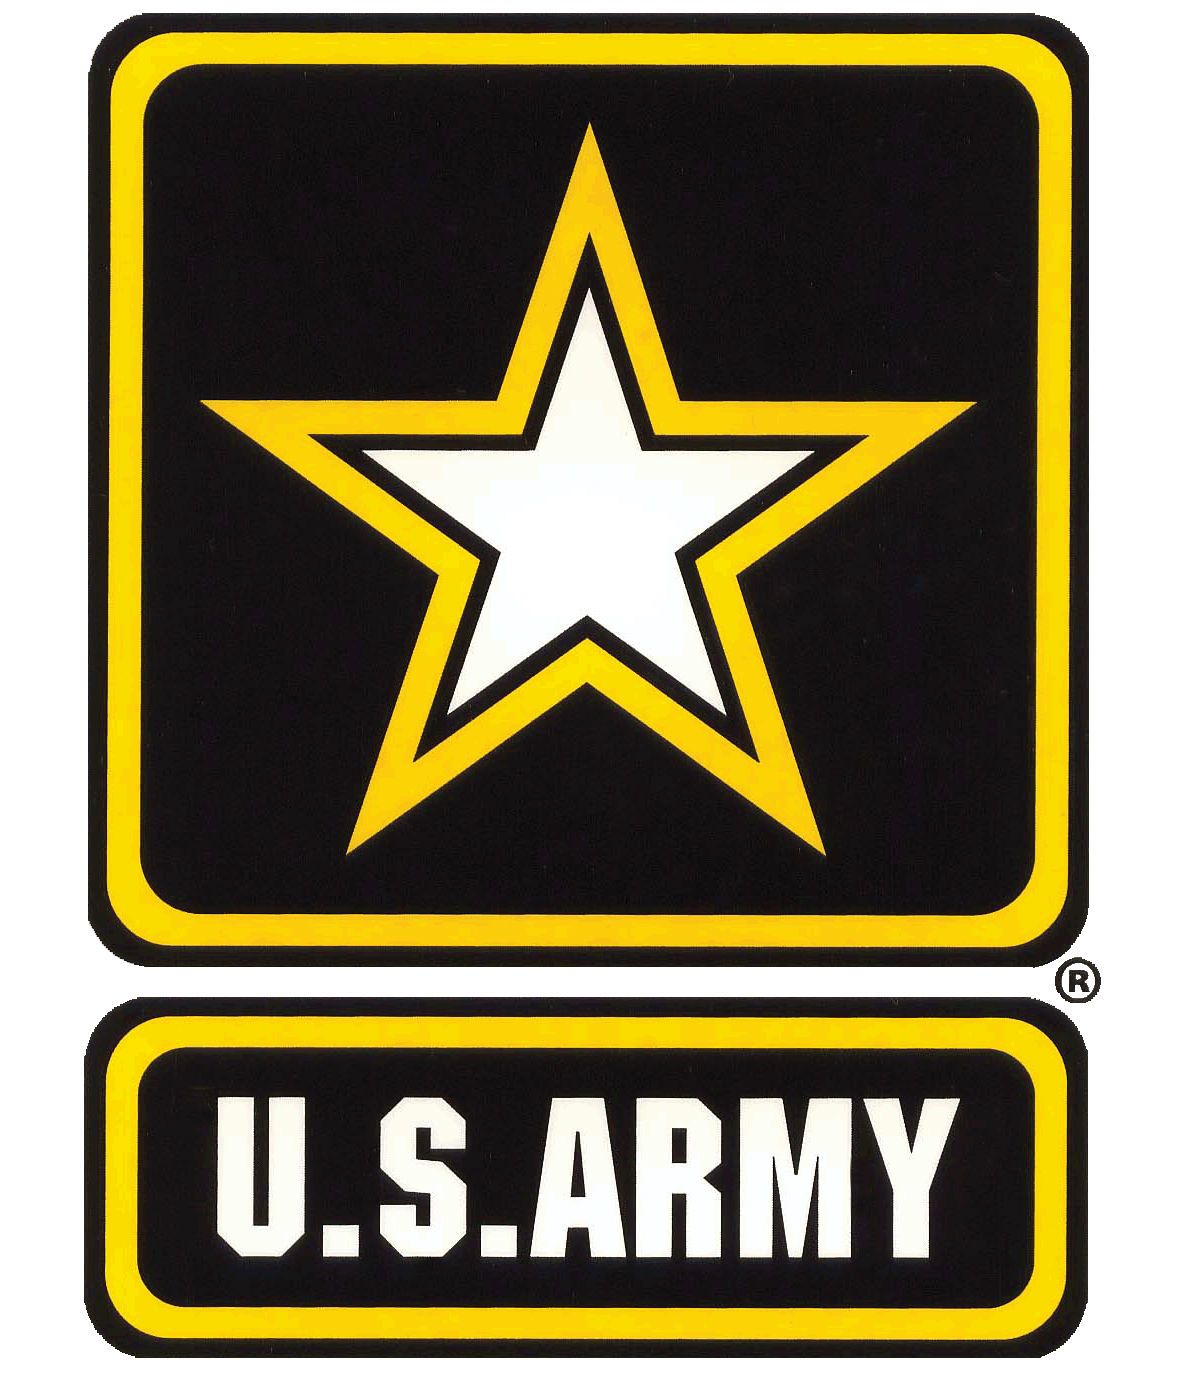 ARMT Logo - army-logo-150 - AFC Transportation